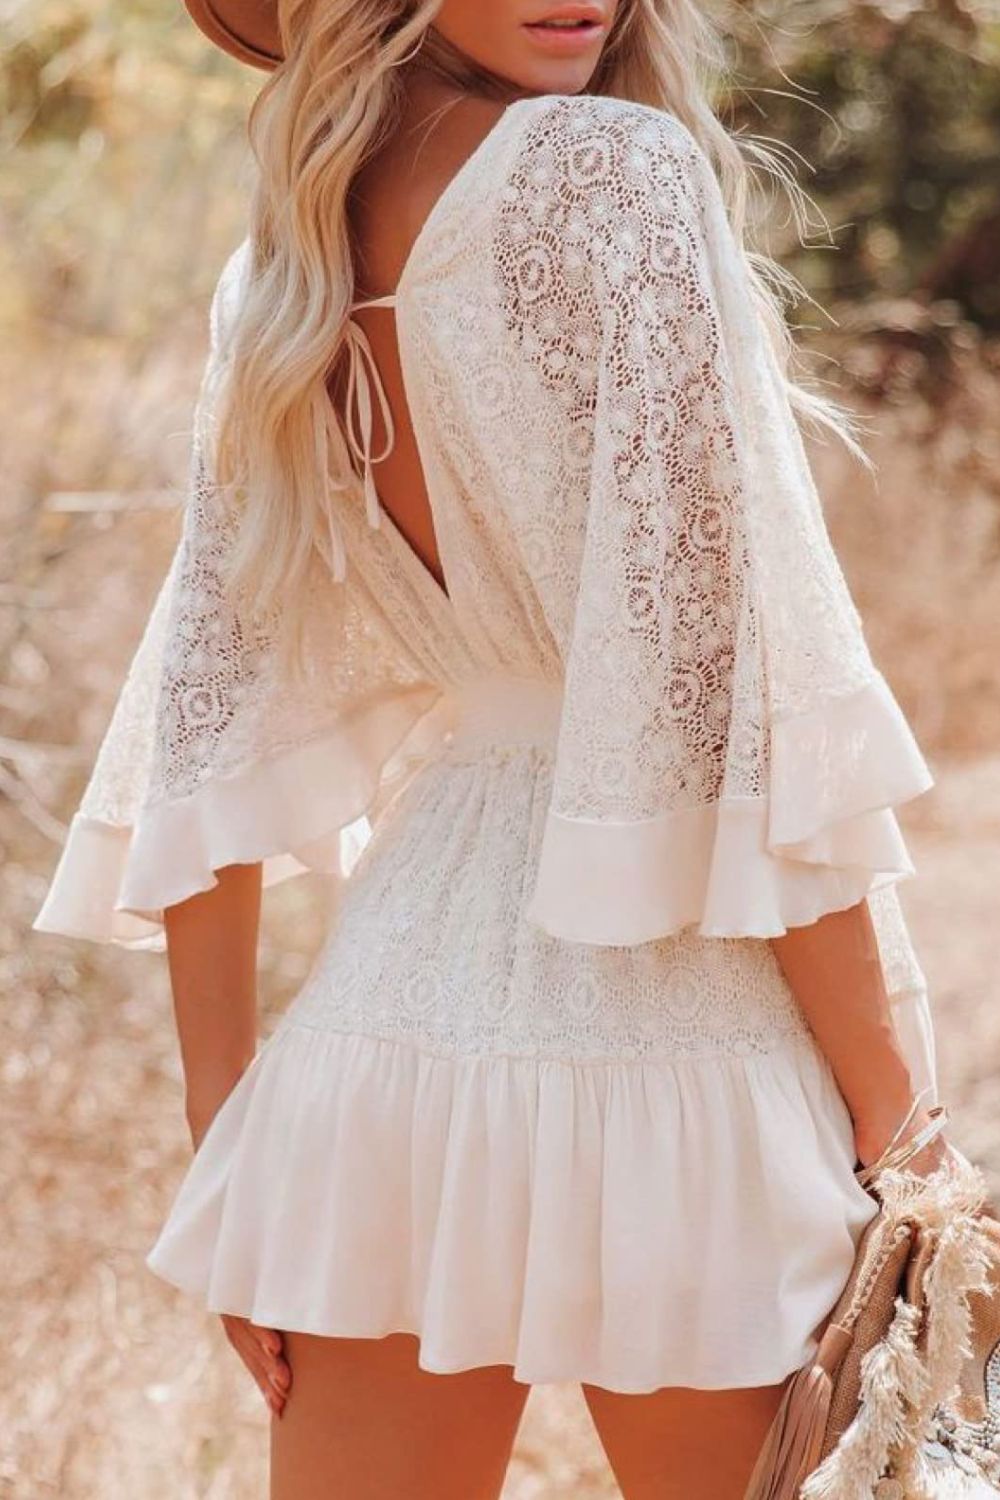 TEEK - White Lace Falling Button Half Sleeve Dress DRESS TEEK Trend   